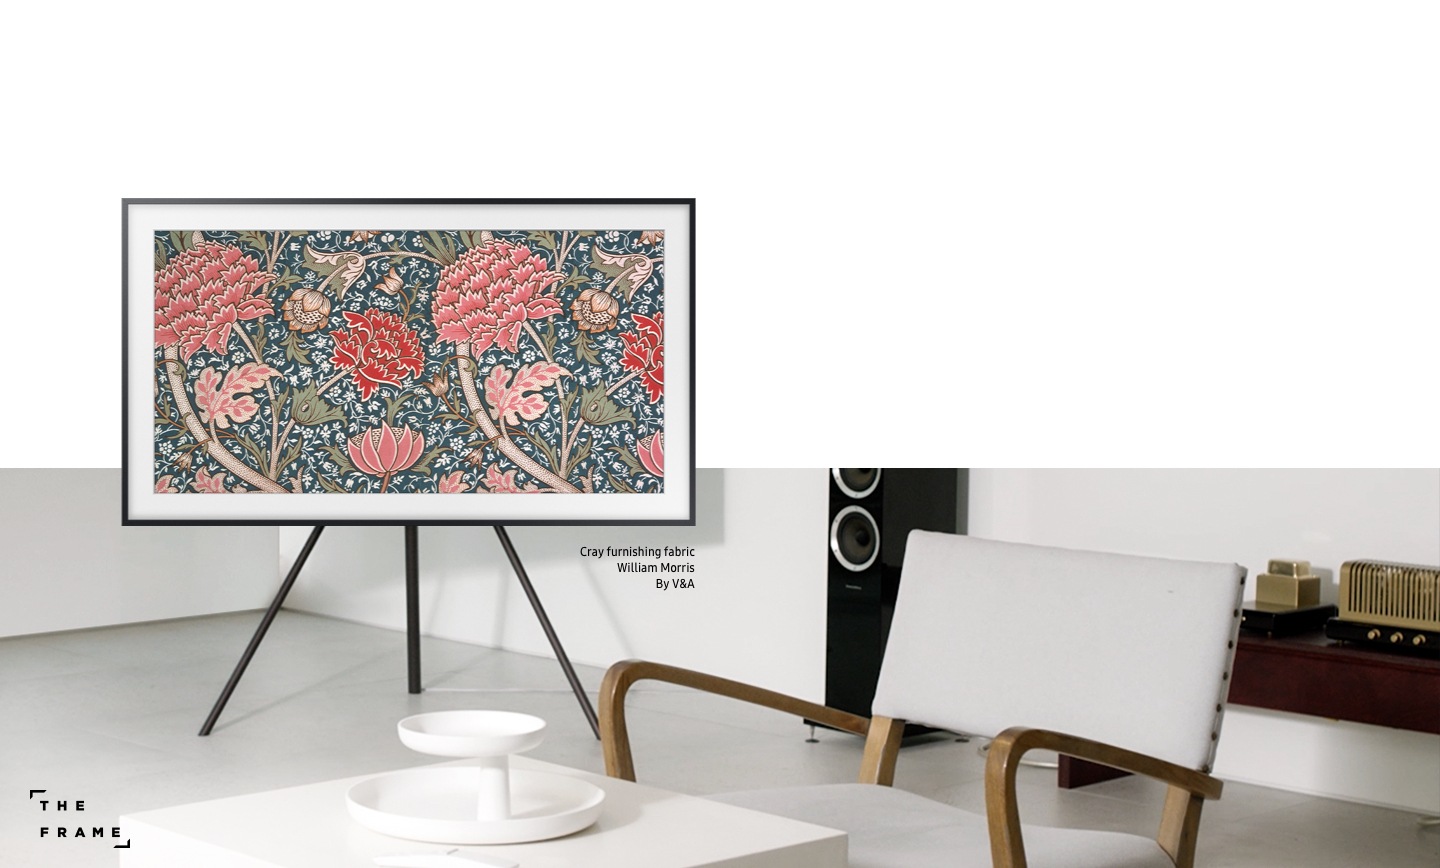 טלוויזיית The Frame של Samsung מציגה את יצירת האומנות Cray furnishing fabric מאת וויליאם מוריס, ל-V&A. טלוויזיית The Frame הופכת כל אזור מגורים לאסתטי יותר, והיא יכולה למלא תפקידים שונים בכל מקום בו היא ממוקמת.